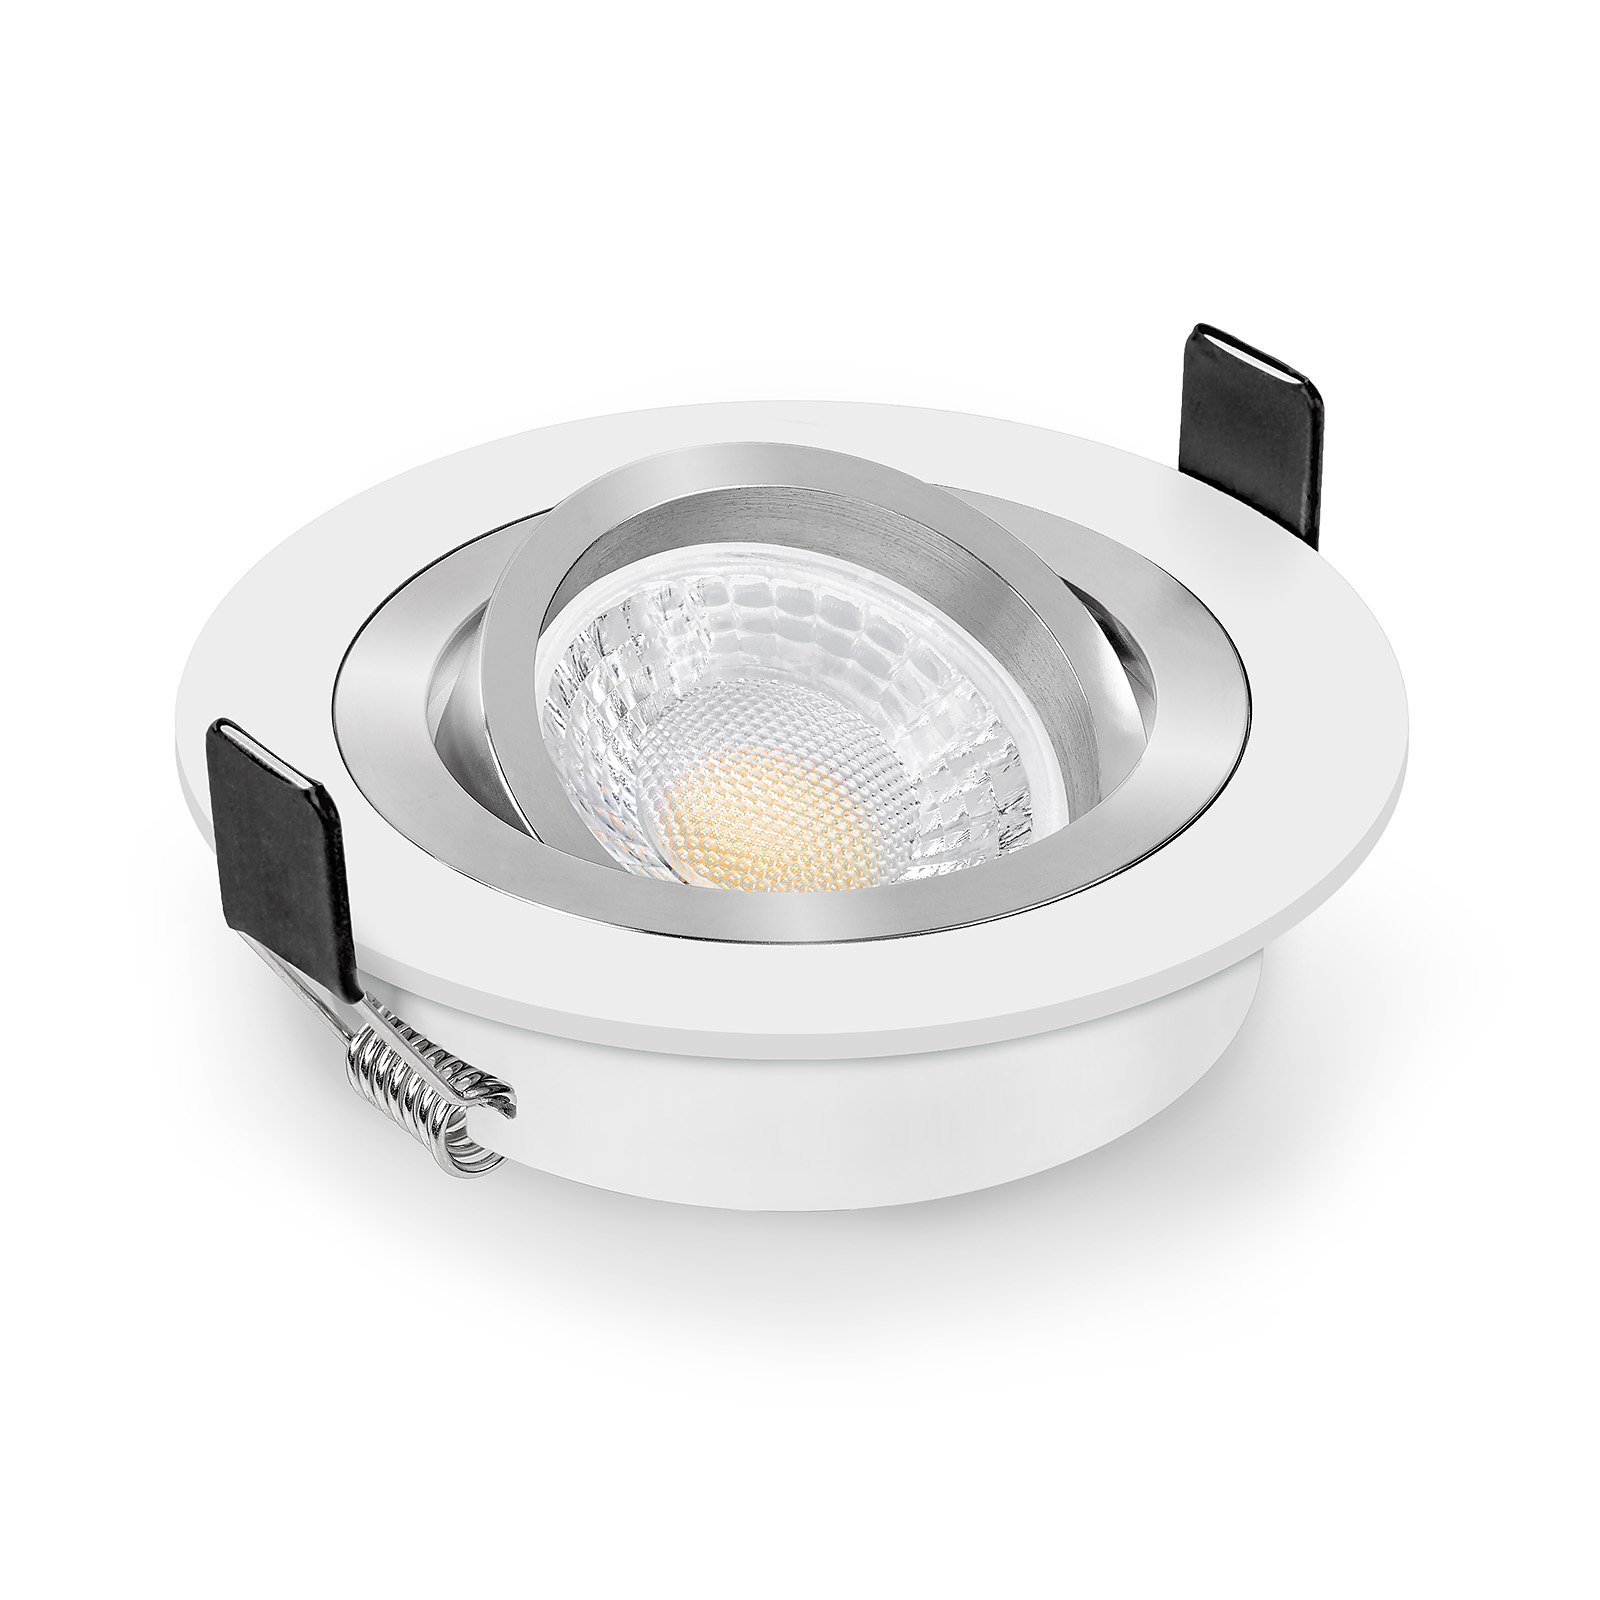 Einbaustrahler LED Einbauspot Einbauleuchte Rahmen Spot Schwenkbar Lampe 104 